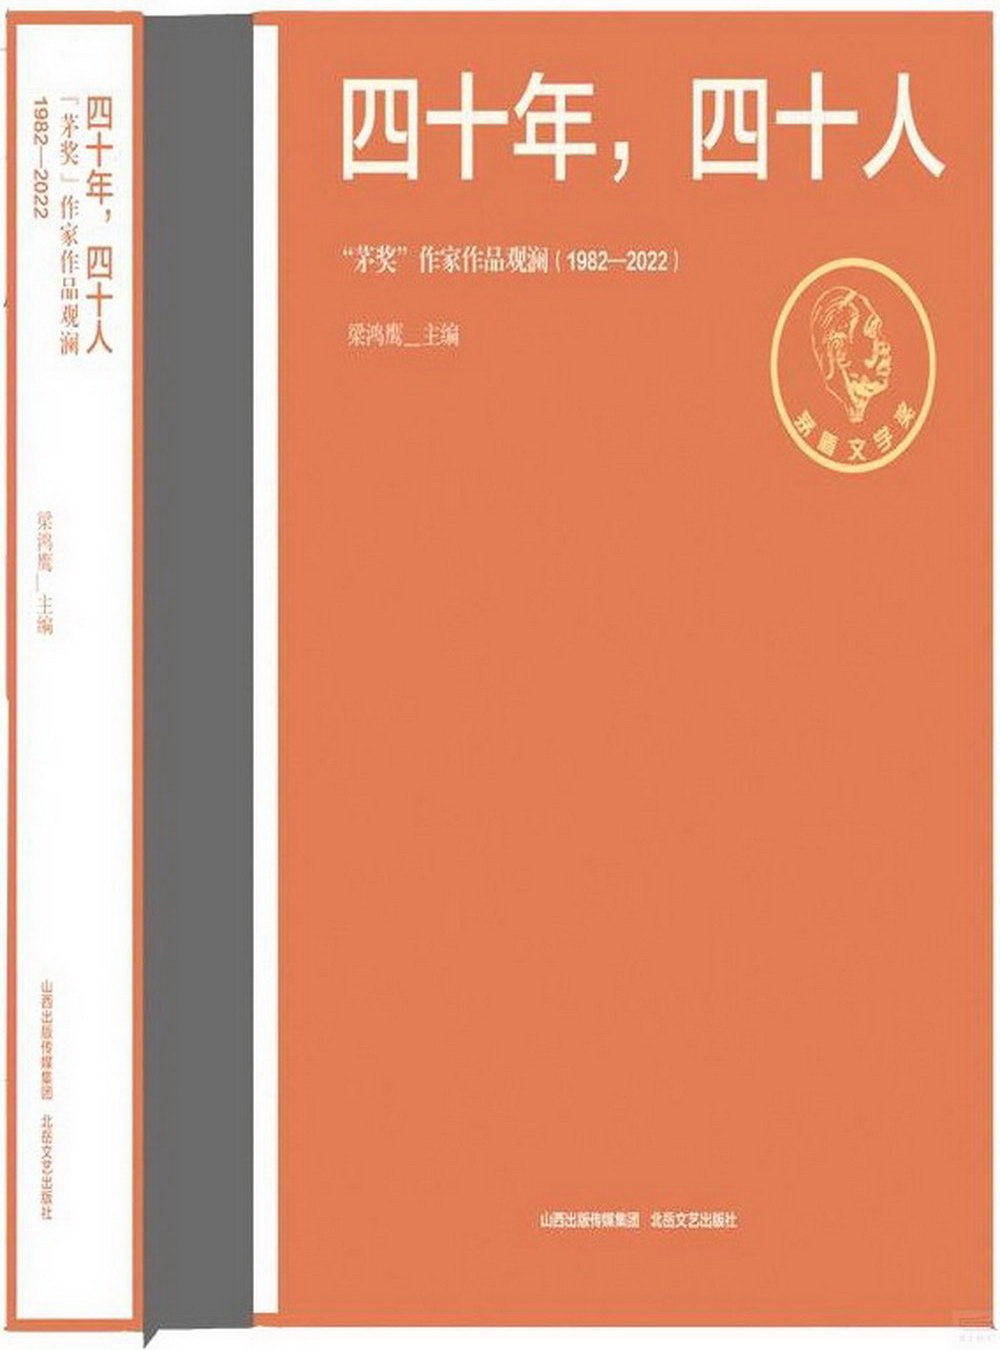 四十年，四十人：“茅獎”作家作品觀瀾(1982-2022)